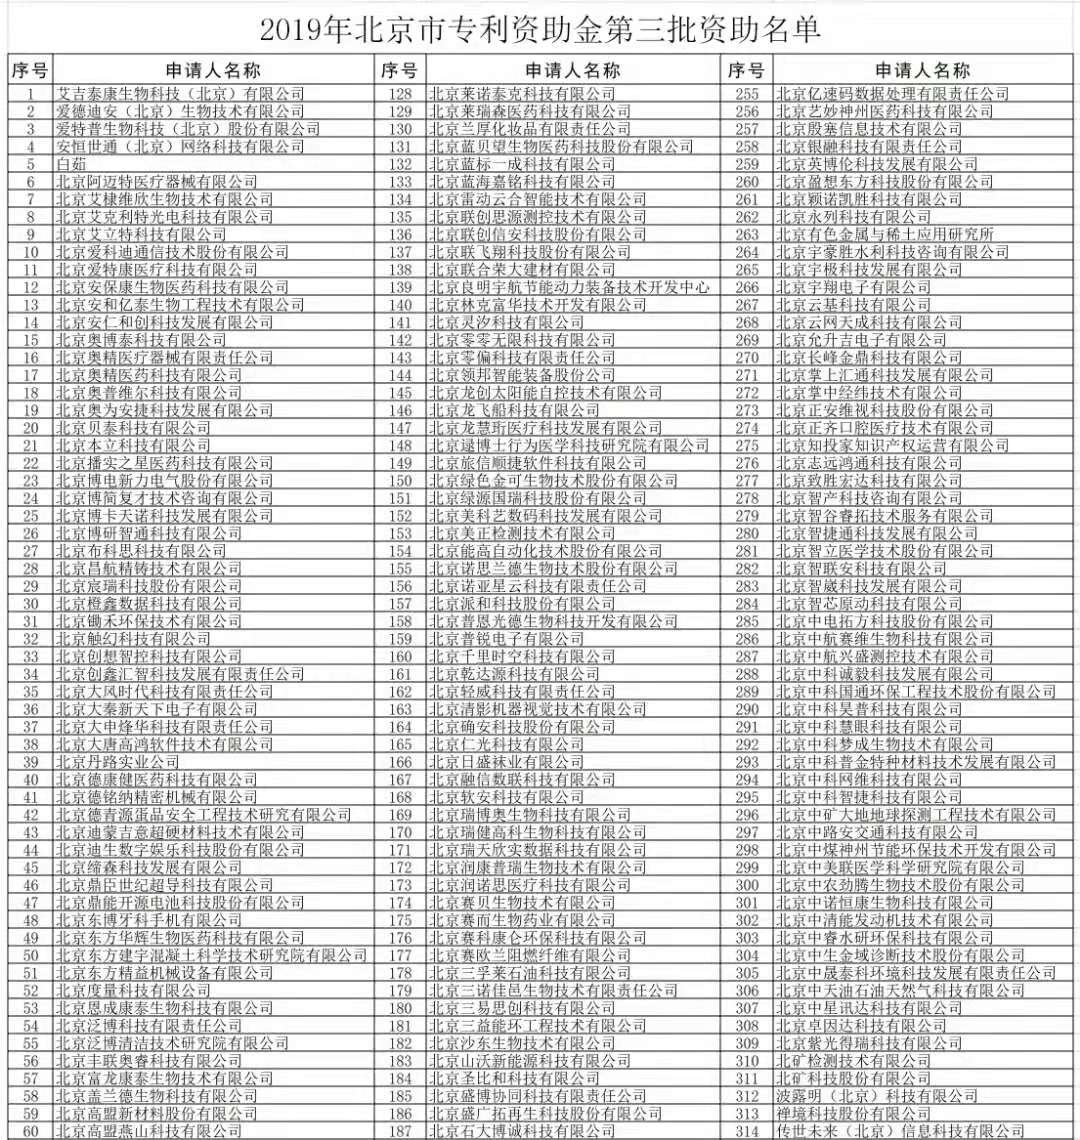 【公示】2019年北京市专利资助名单和小微企业发明专利年费资助名单